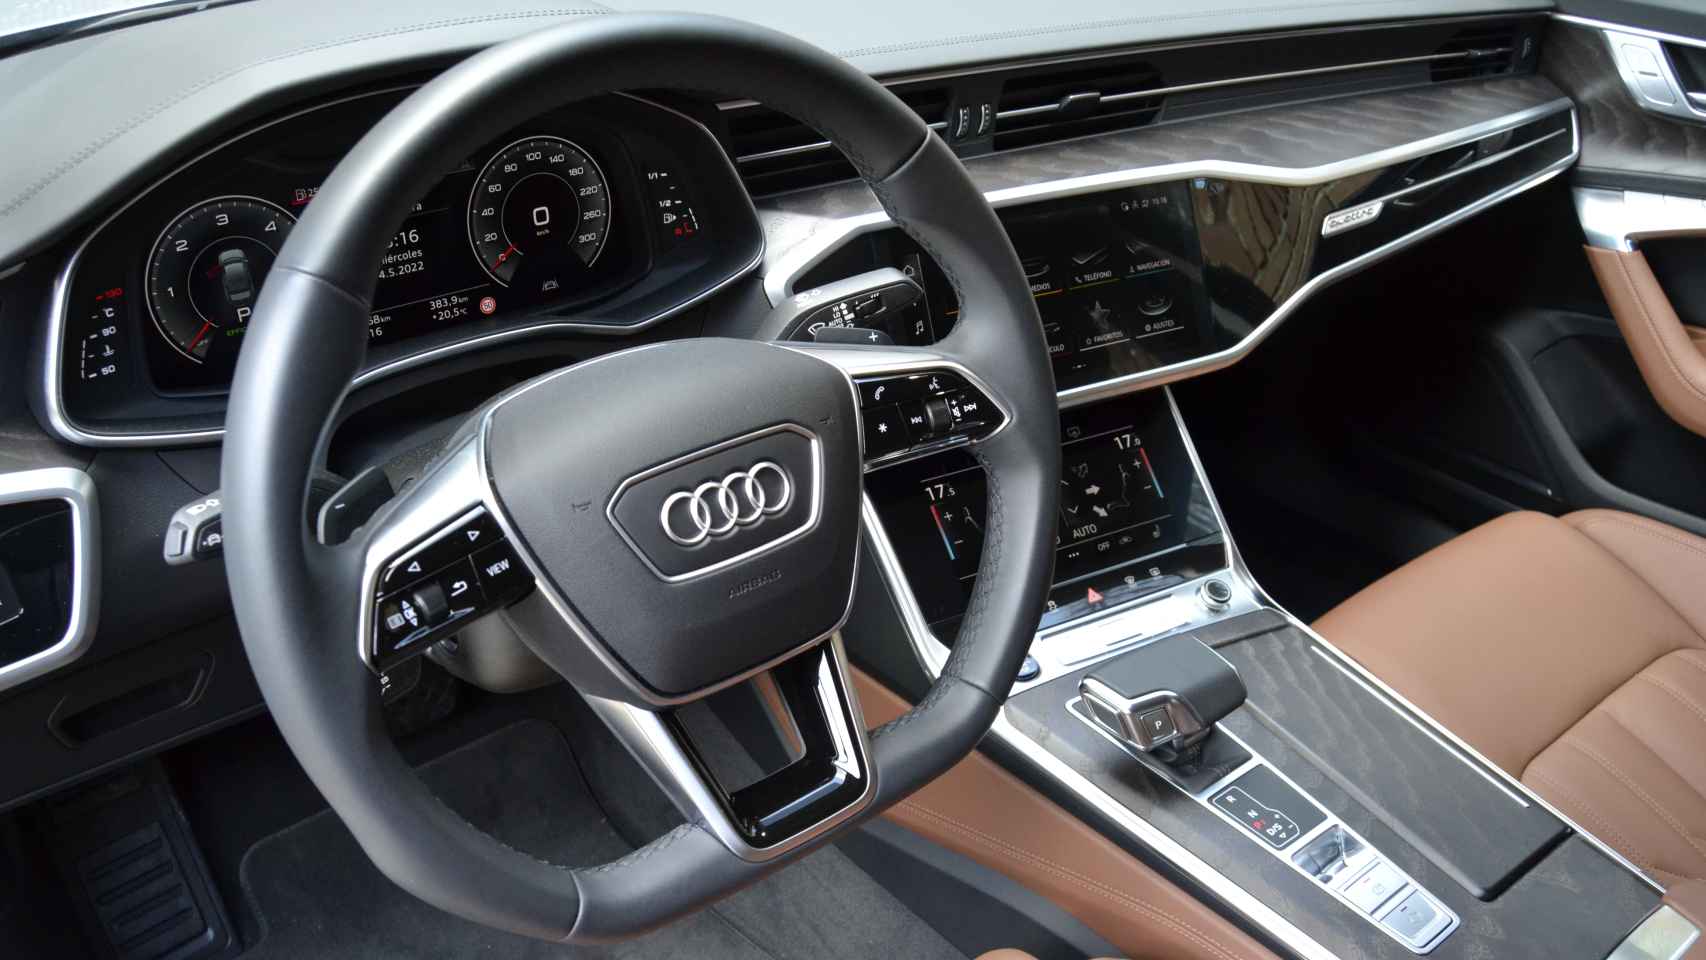 El interior del Audi A6 mantiene un formato clásico propio de una berlina de su categoría.